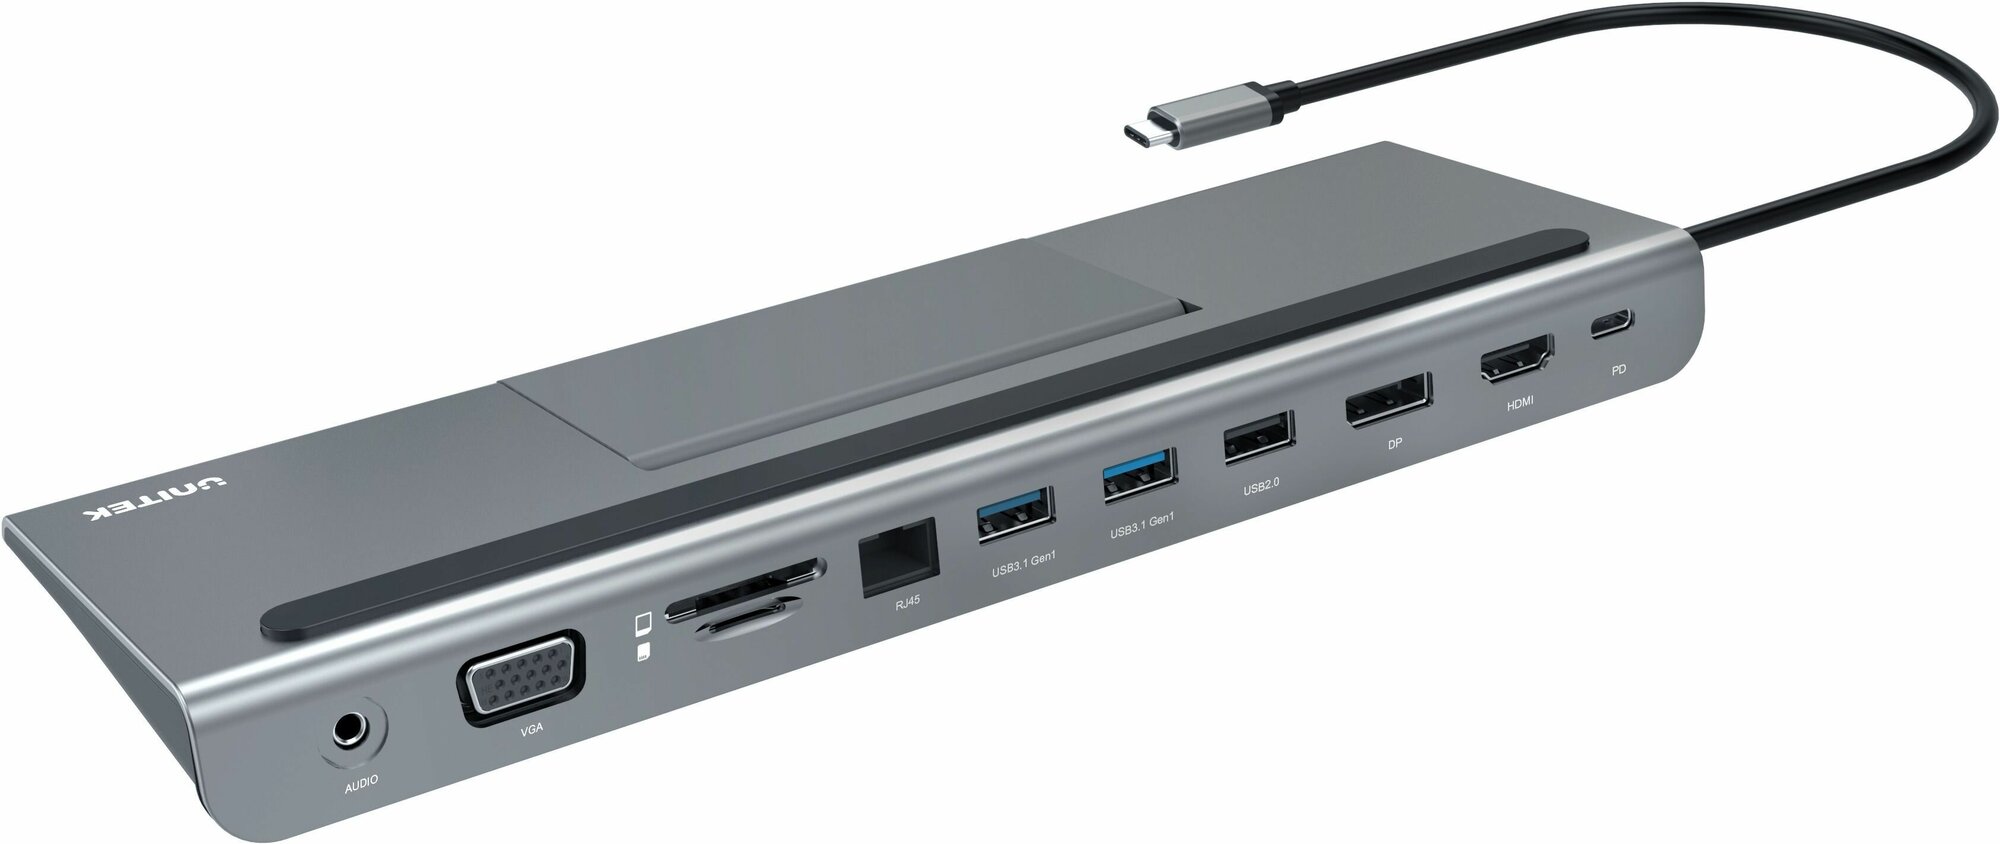 Подставка USB-концентратор (хаб) Unitek 11 в 1 (VGA, HDMI, RJ45, 2x USB A 3.0, USB A 2.0, USB C PD) (D1022A)